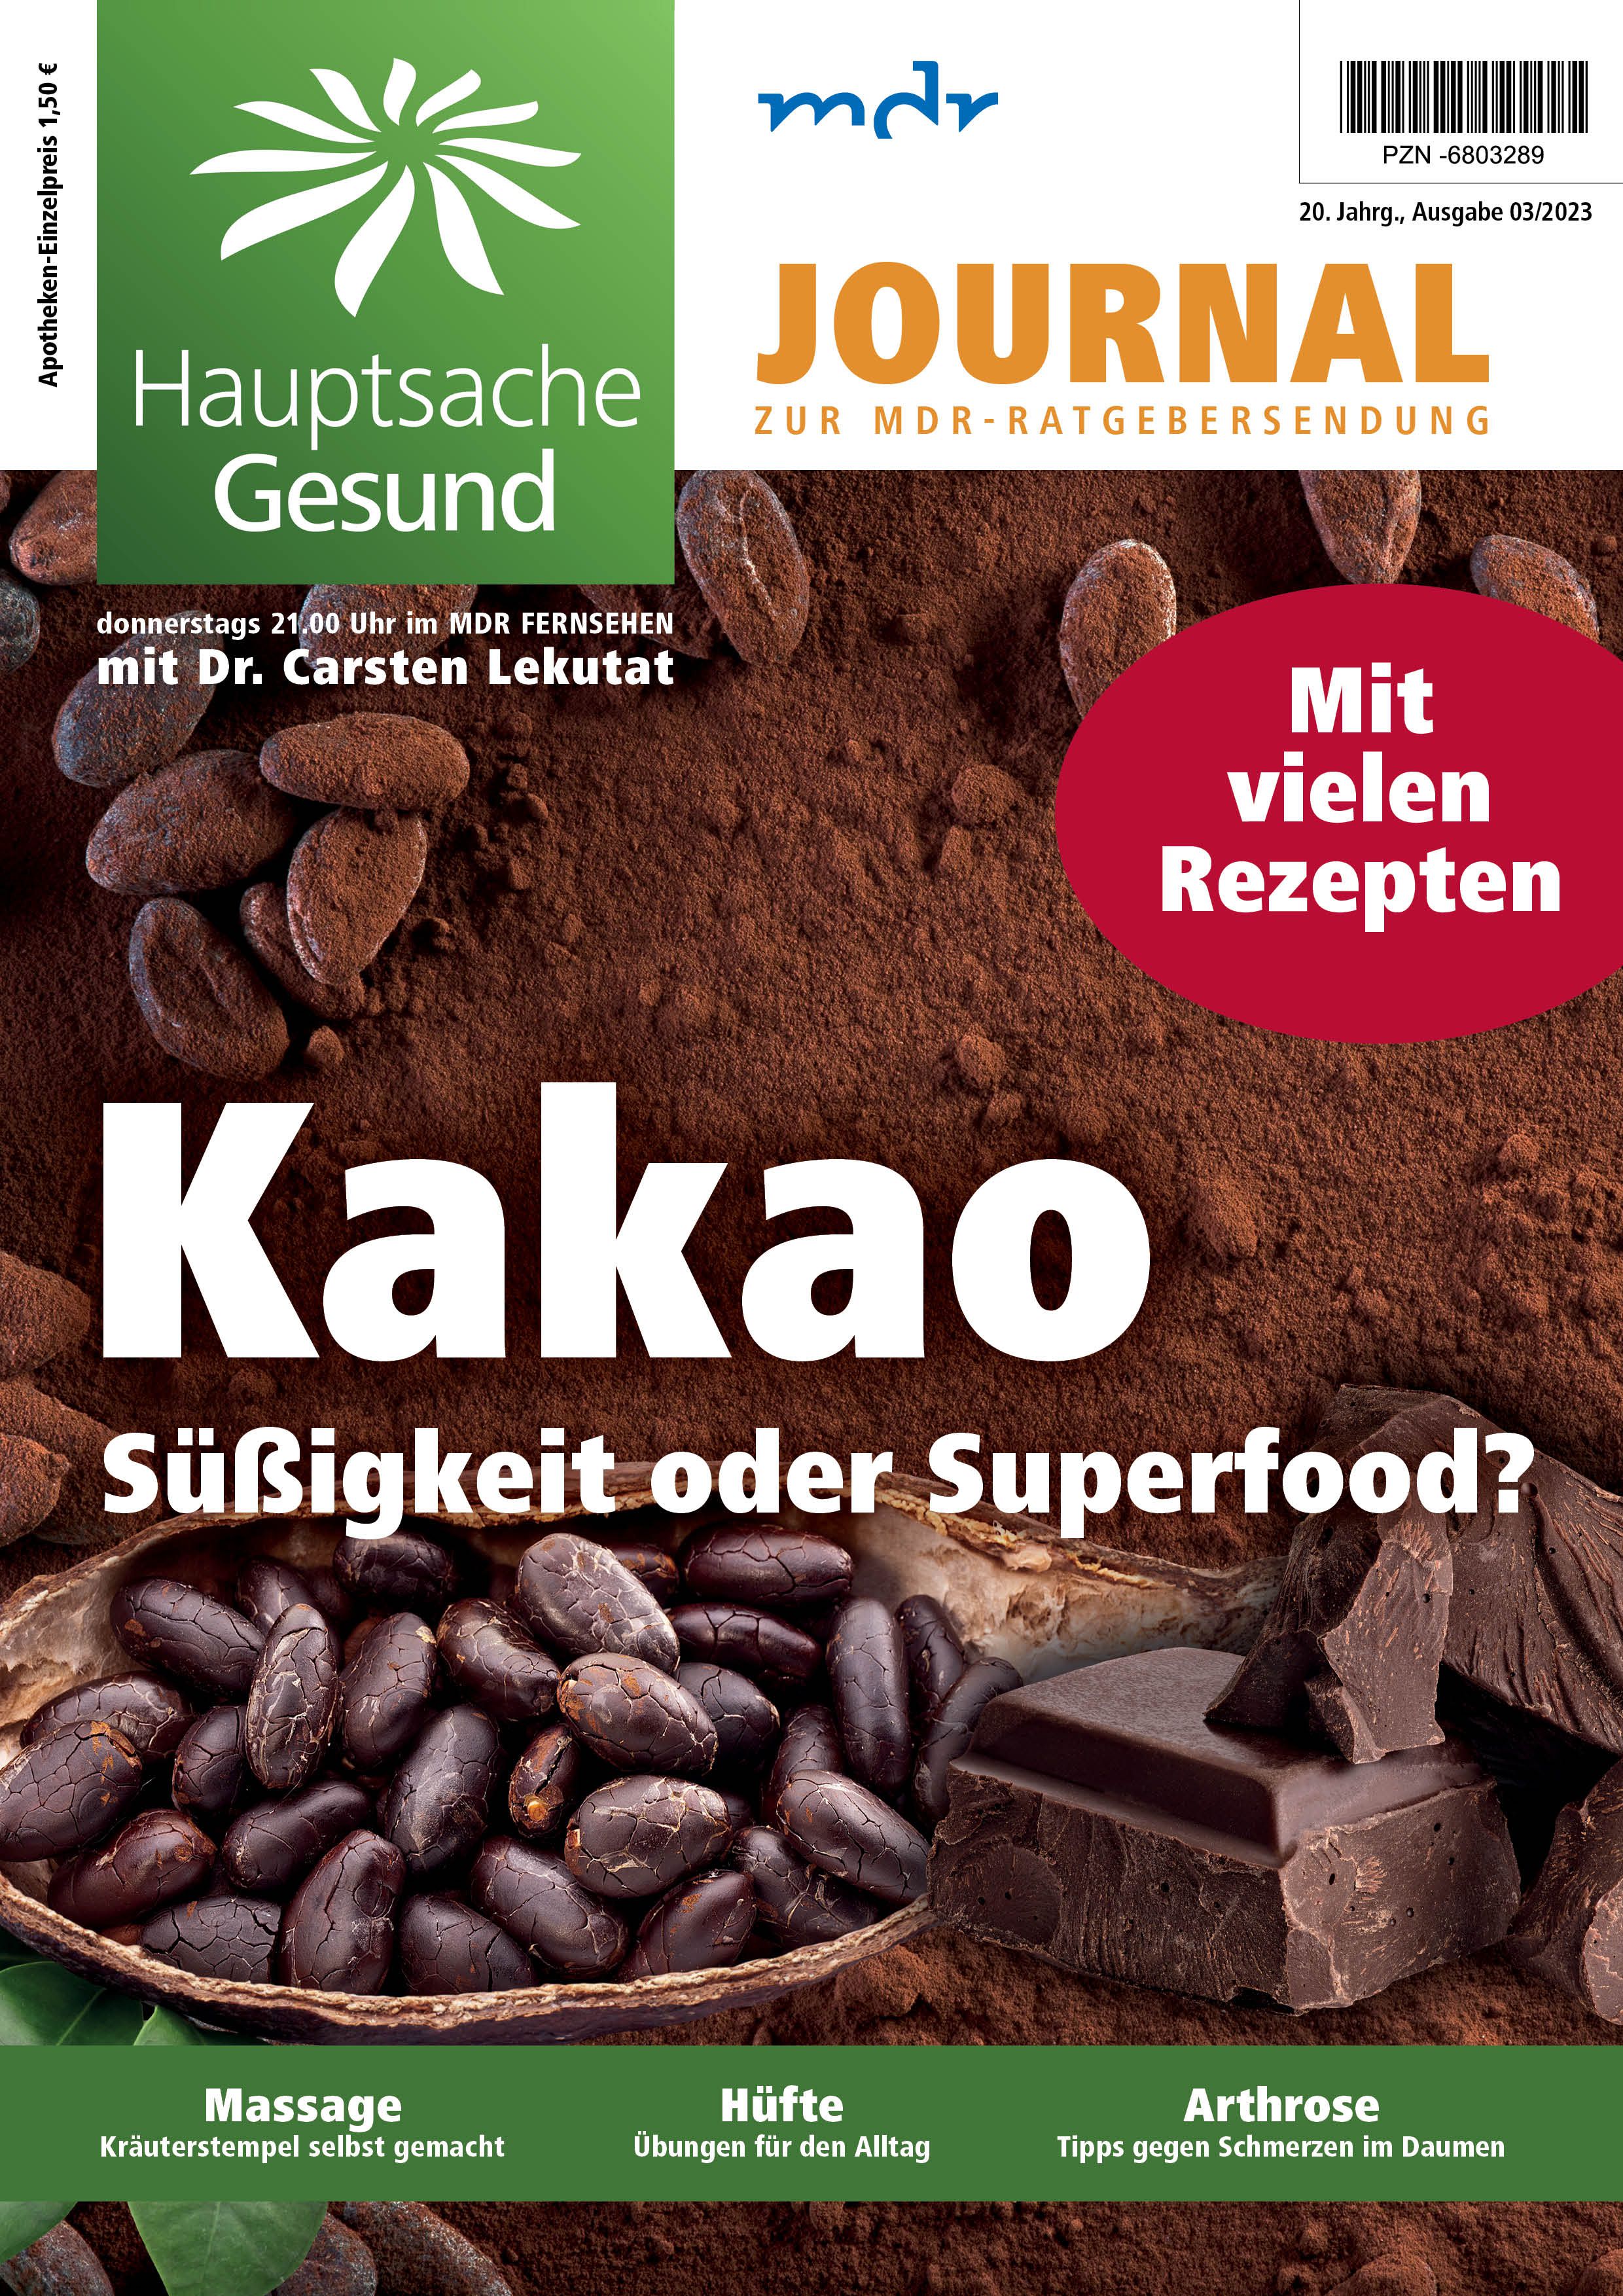 HAUPTSACHE GESUND Journal/Zeitschrift